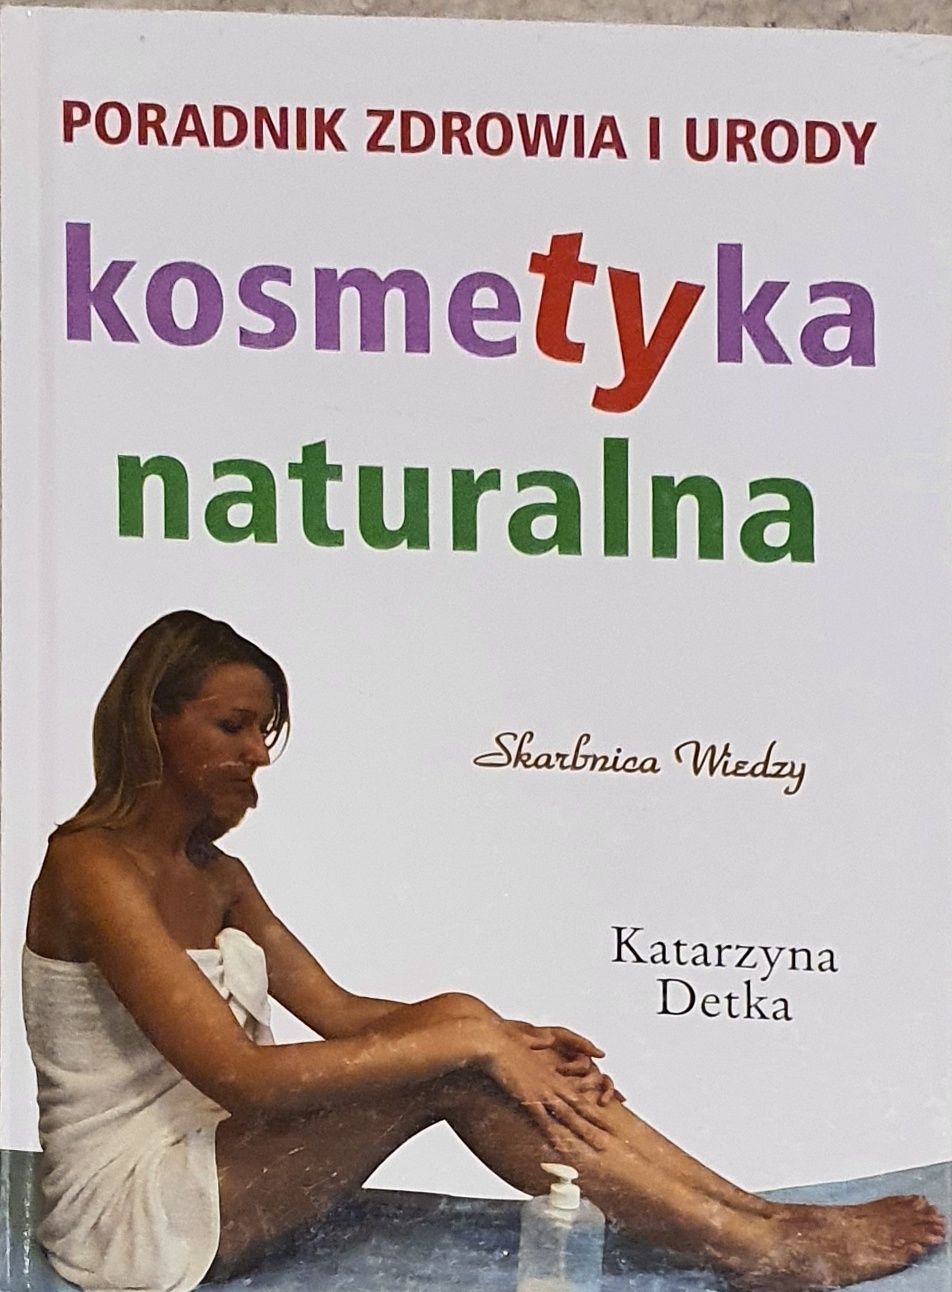 Książka Poradnik zdrowia u urody kosmetyka naturalna